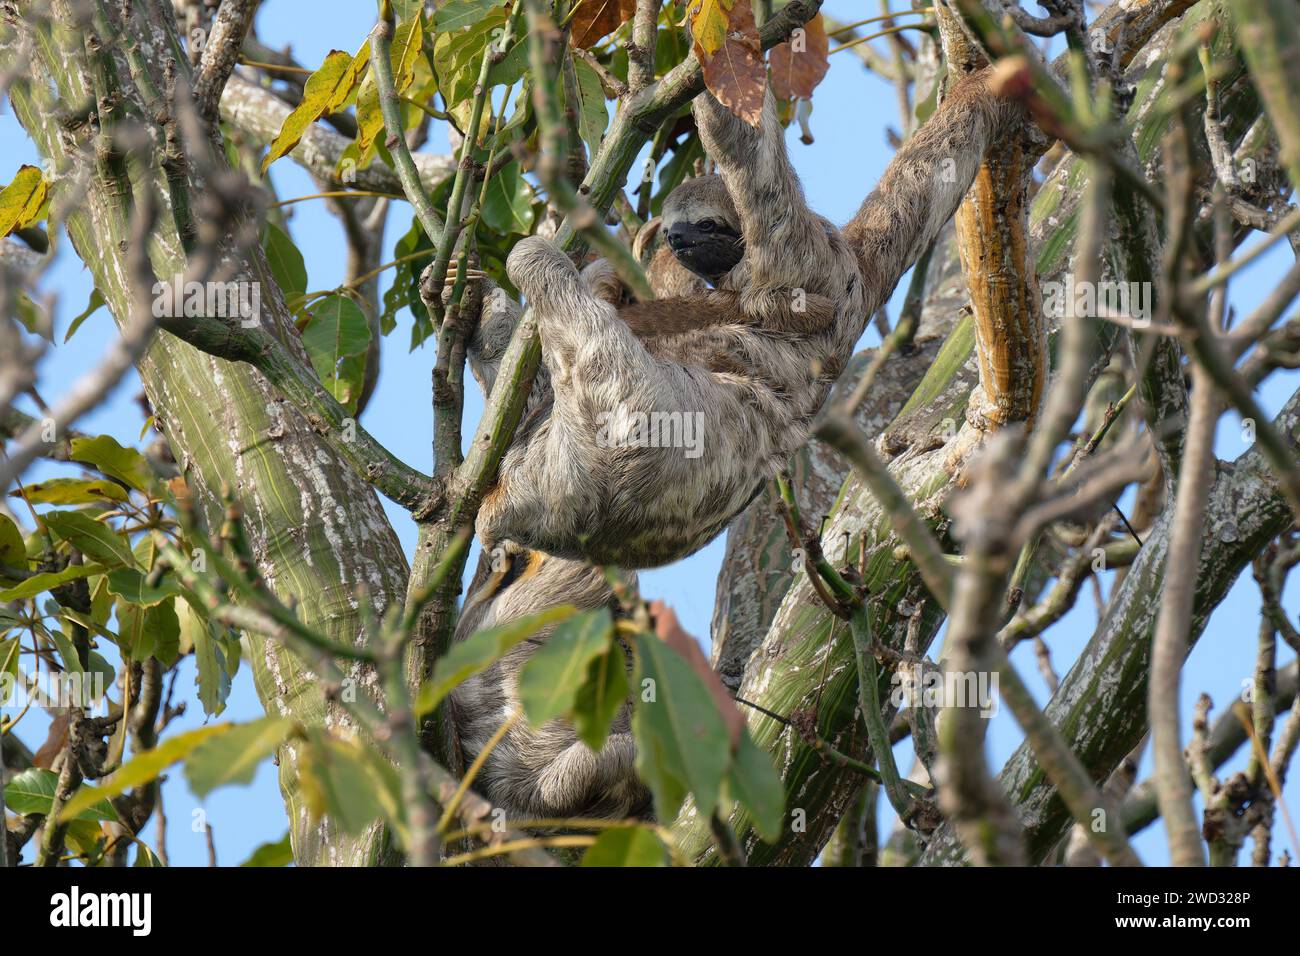 Brown ha gola a tre dita del piede Sloth, Bradypus variegatus, in un albero, bacino amazzonico, Brasile Foto Stock